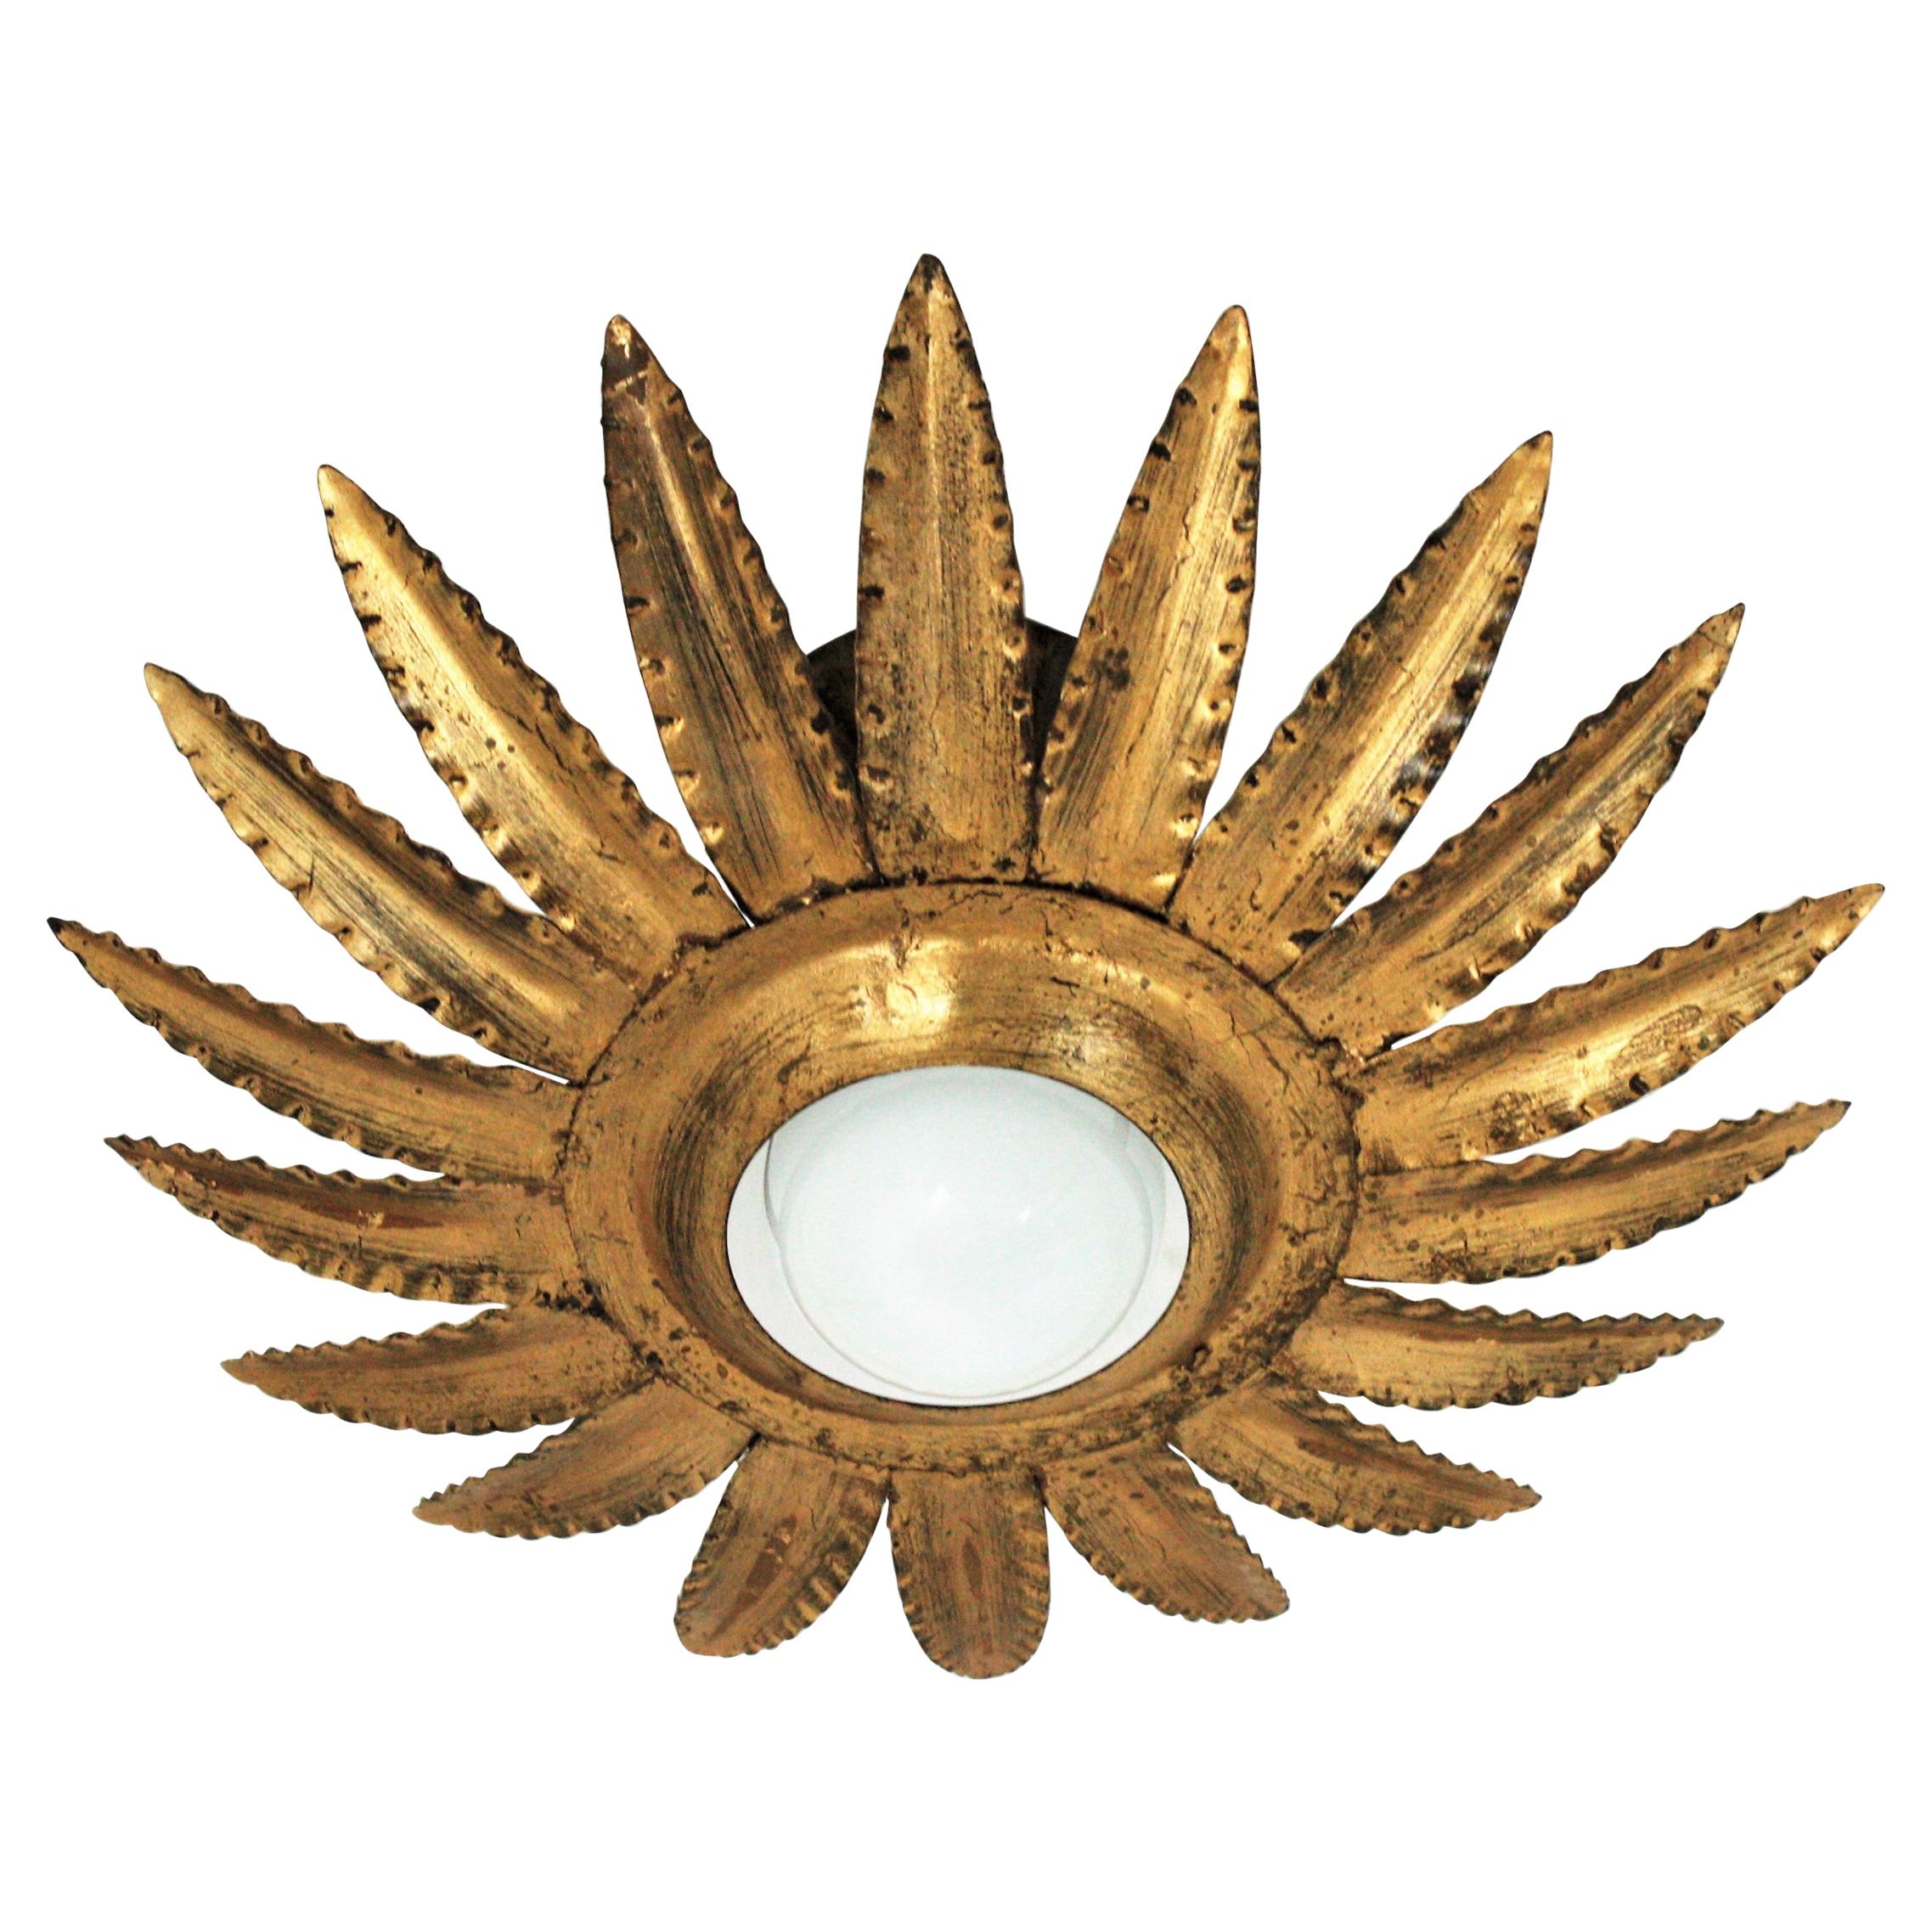 Sunburst Flower Light Fixture or Pendant in Gilt Metal